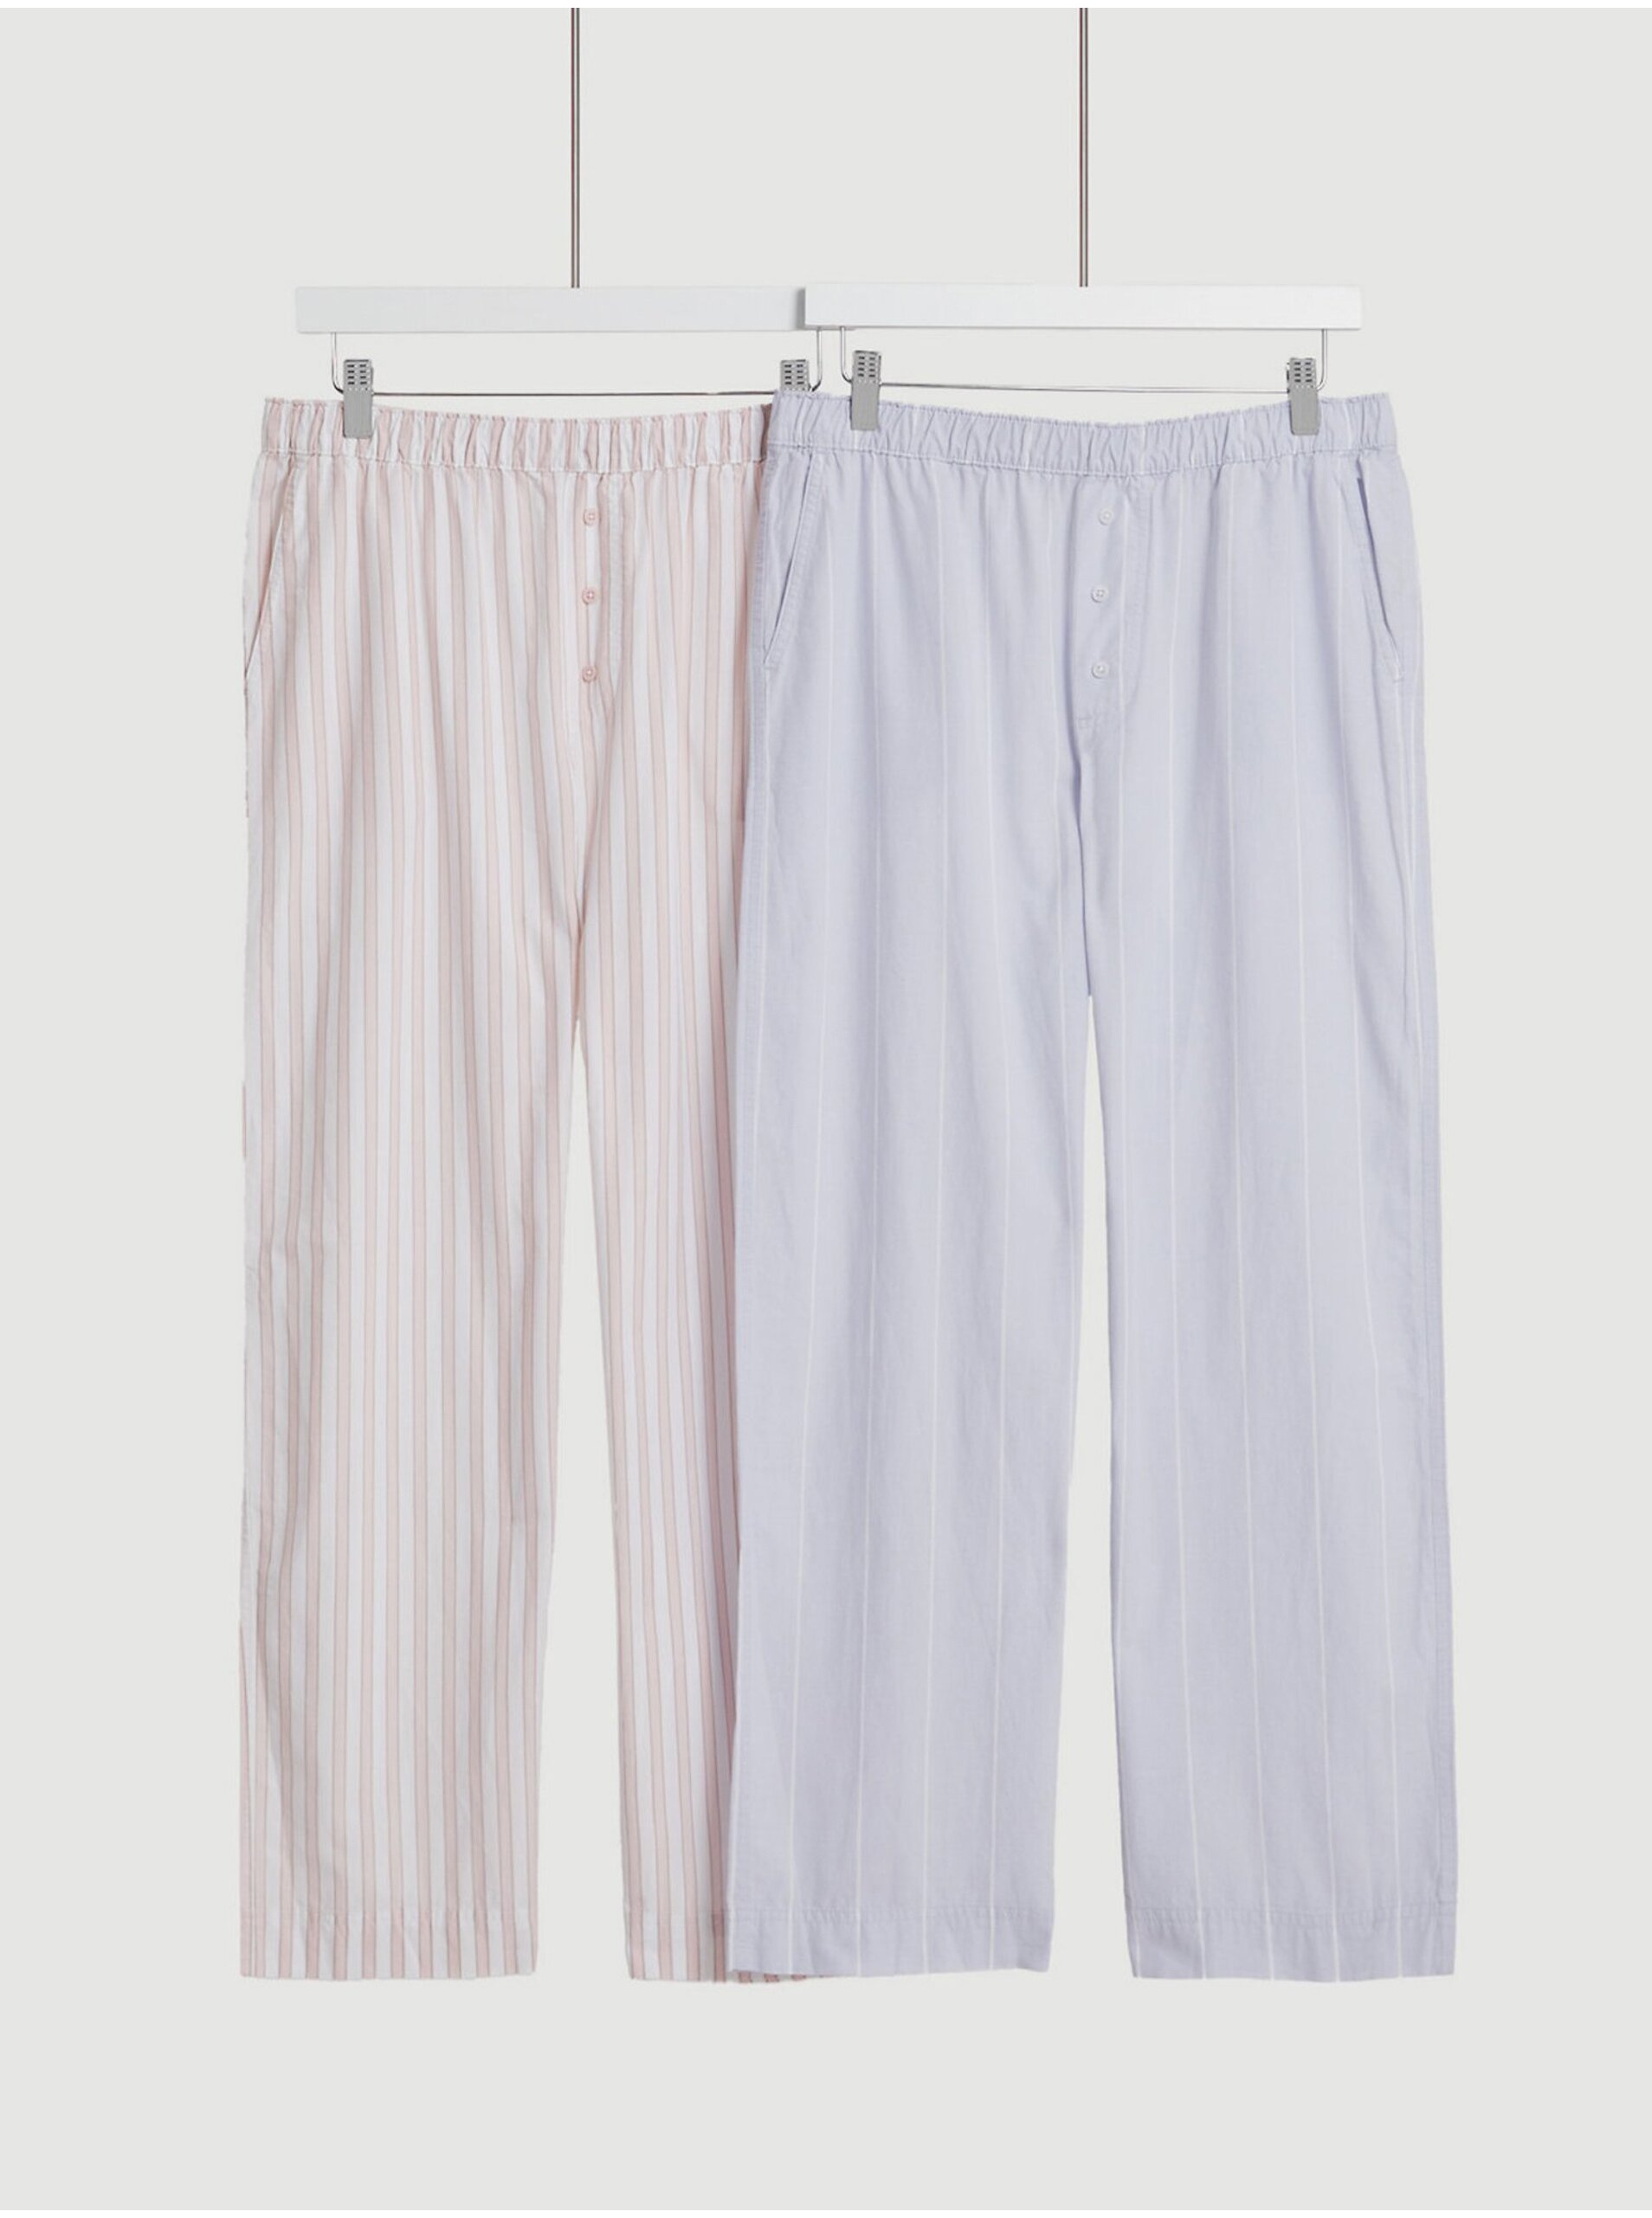 Lacno Súprava dvoch dámskych pruhovaných pyžamových nohavíc v ružovej a modrej farbe Marks & Spencer